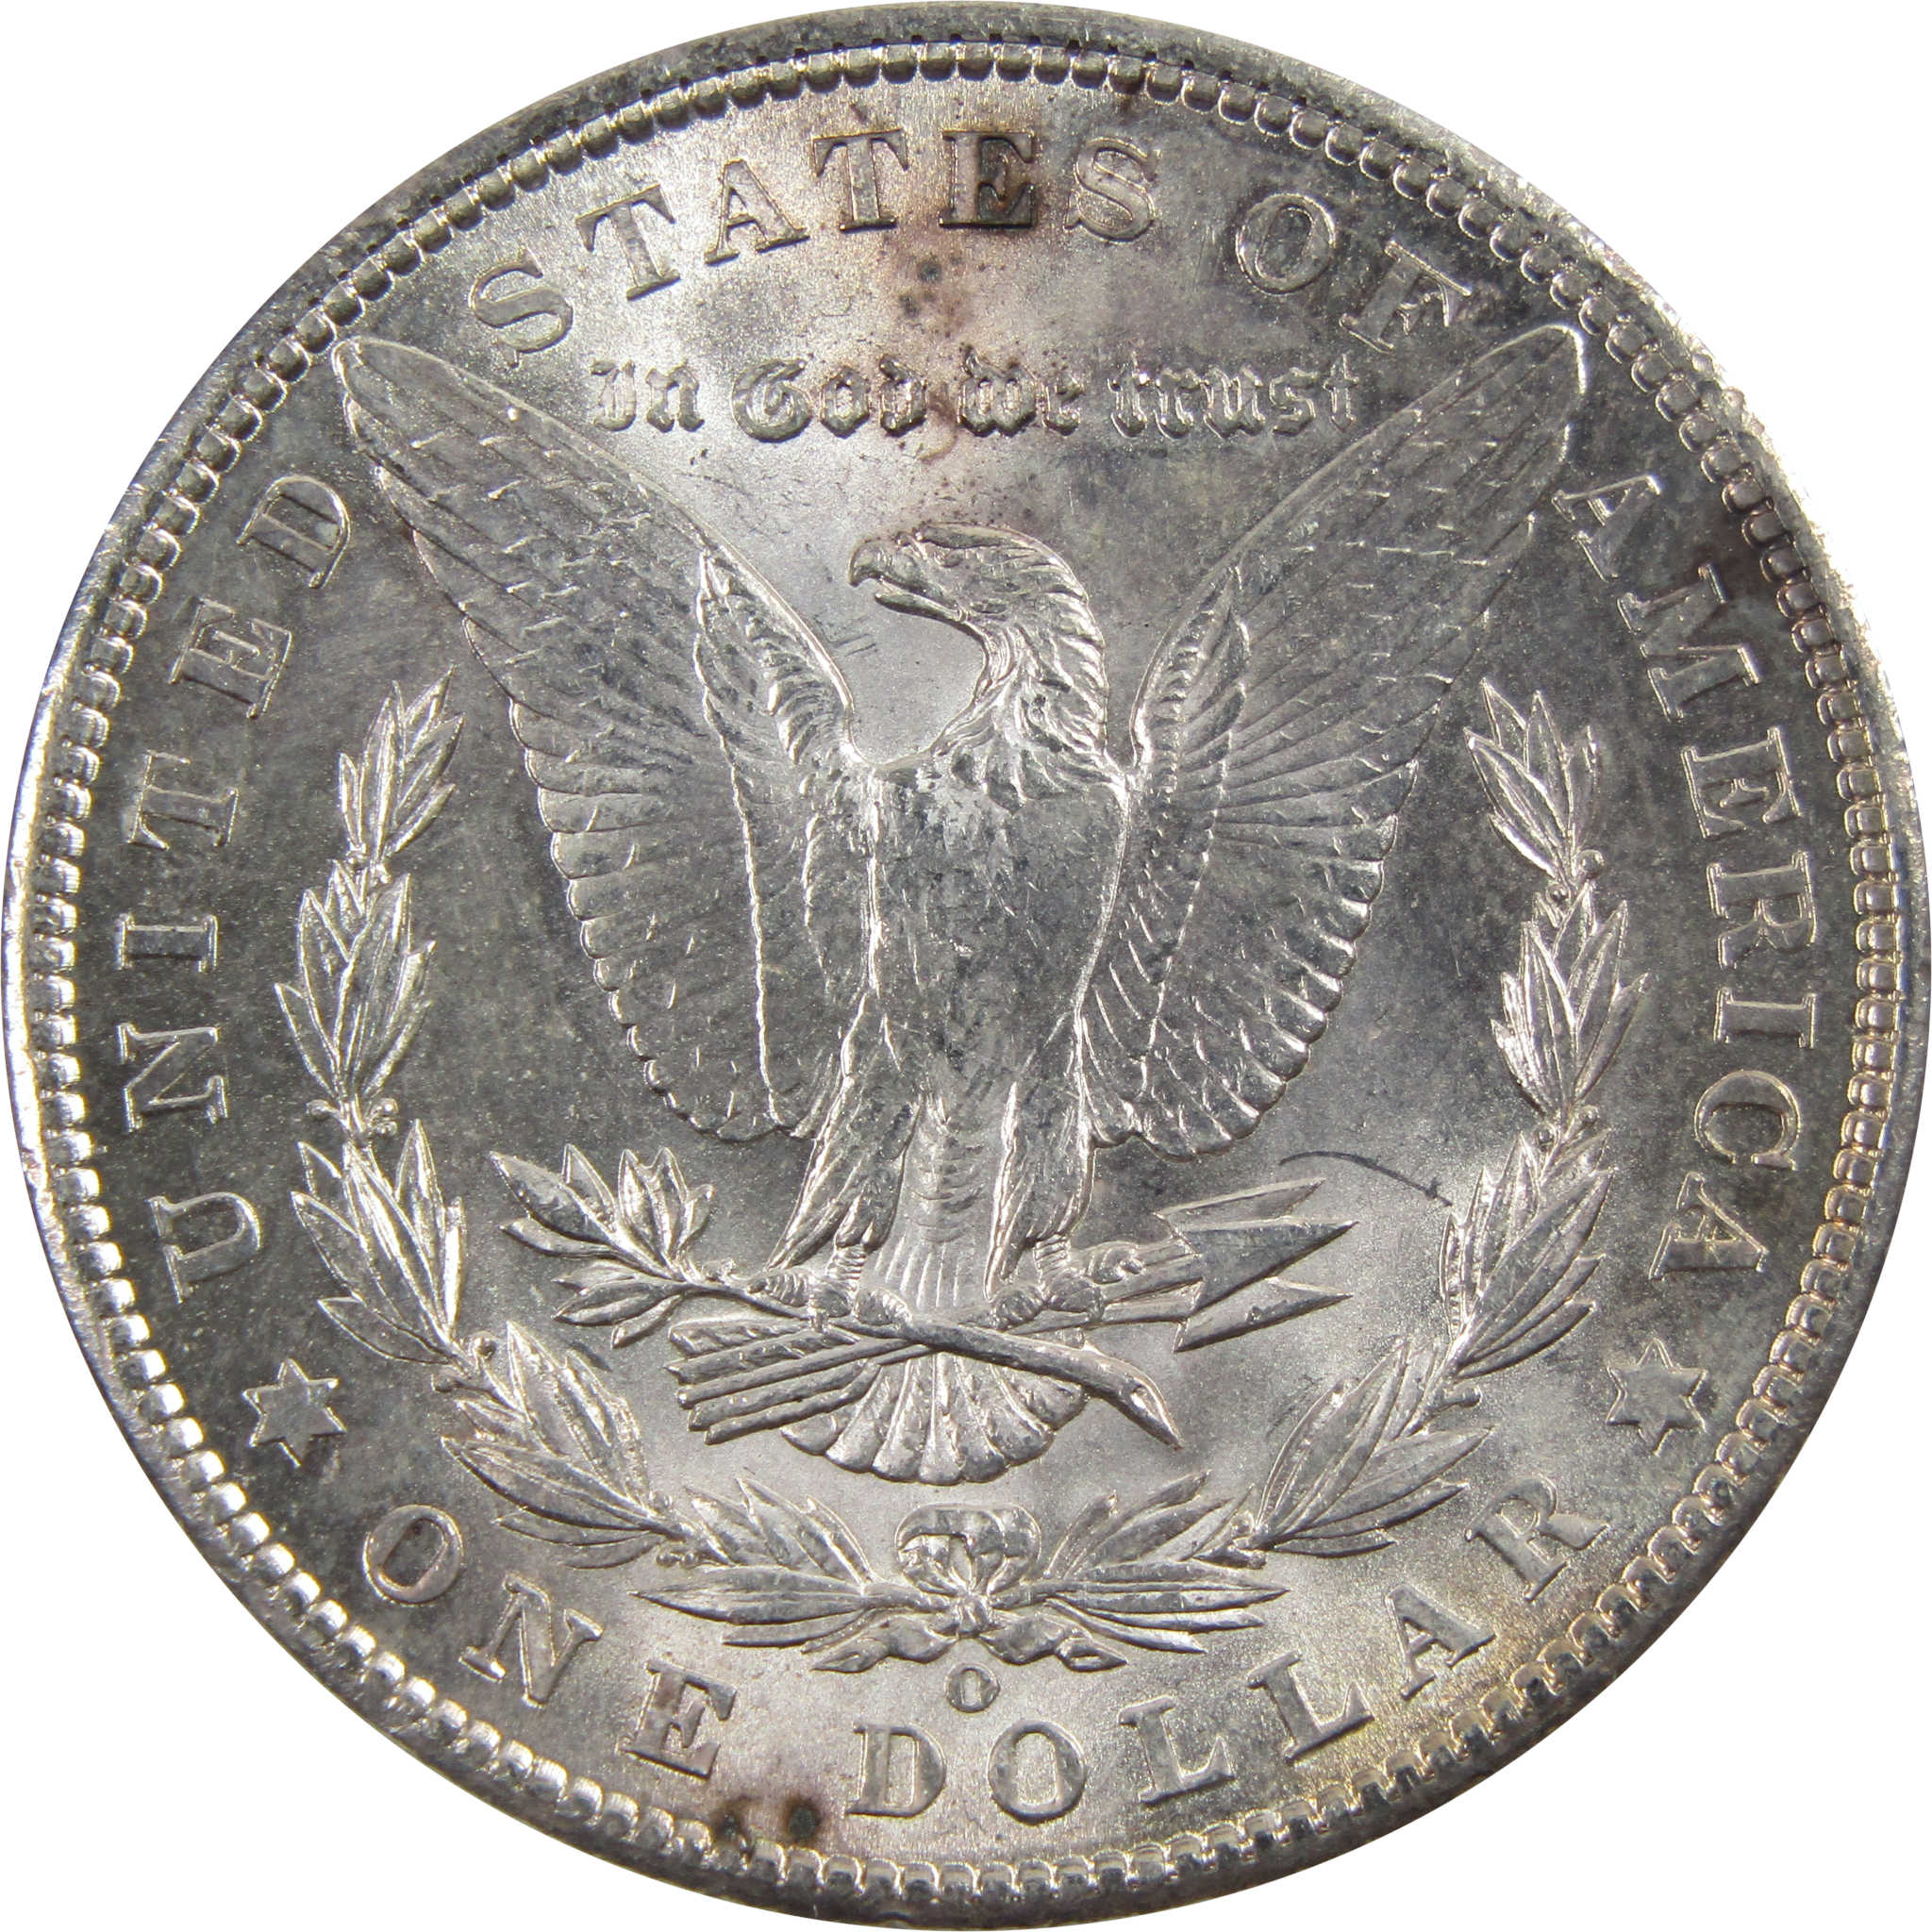 1902 O Morgan Dollar BU Uncirculated 90% Silver $1 Coin SKU:I5198 - Morgan coin - Morgan silver dollar - Morgan silver dollar for sale - Profile Coins &amp; Collectibles